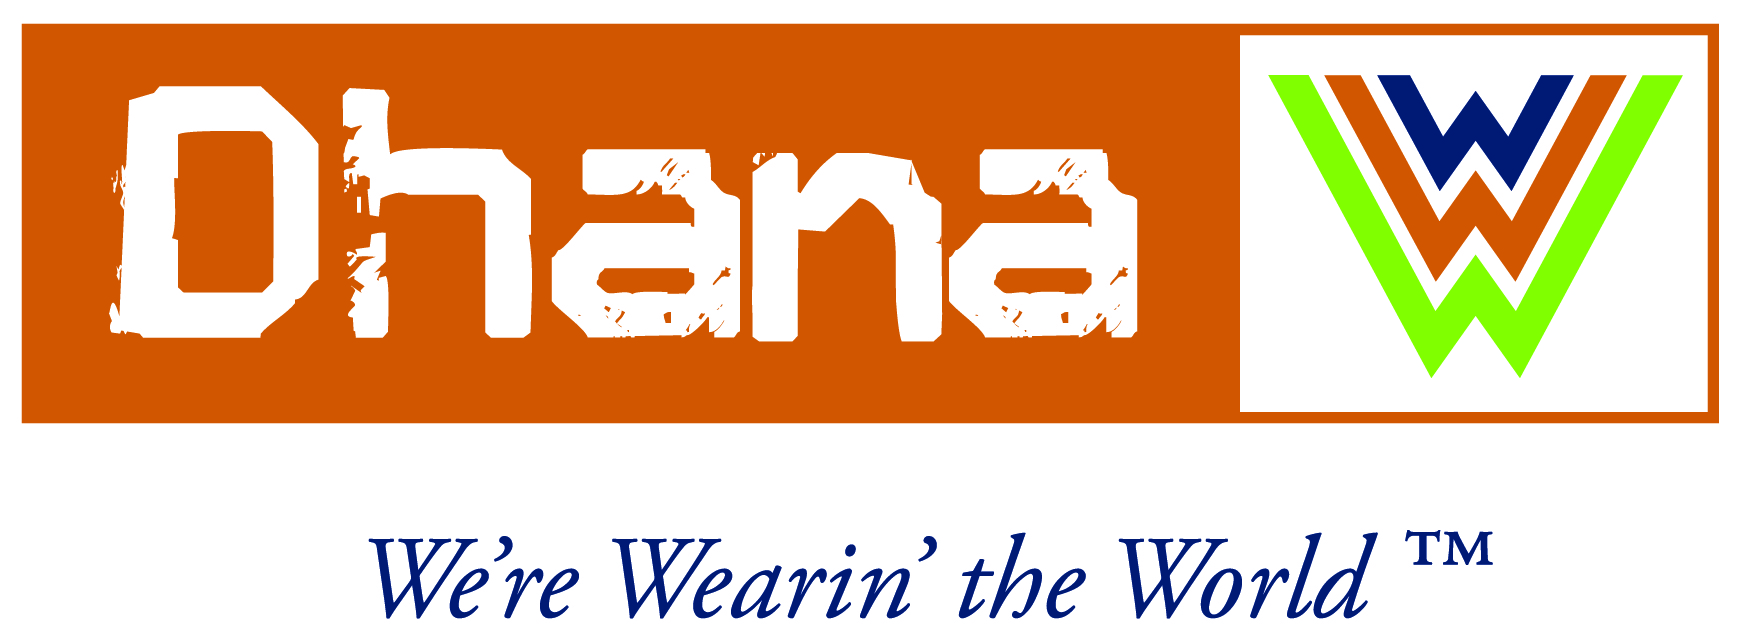 Dhana logo